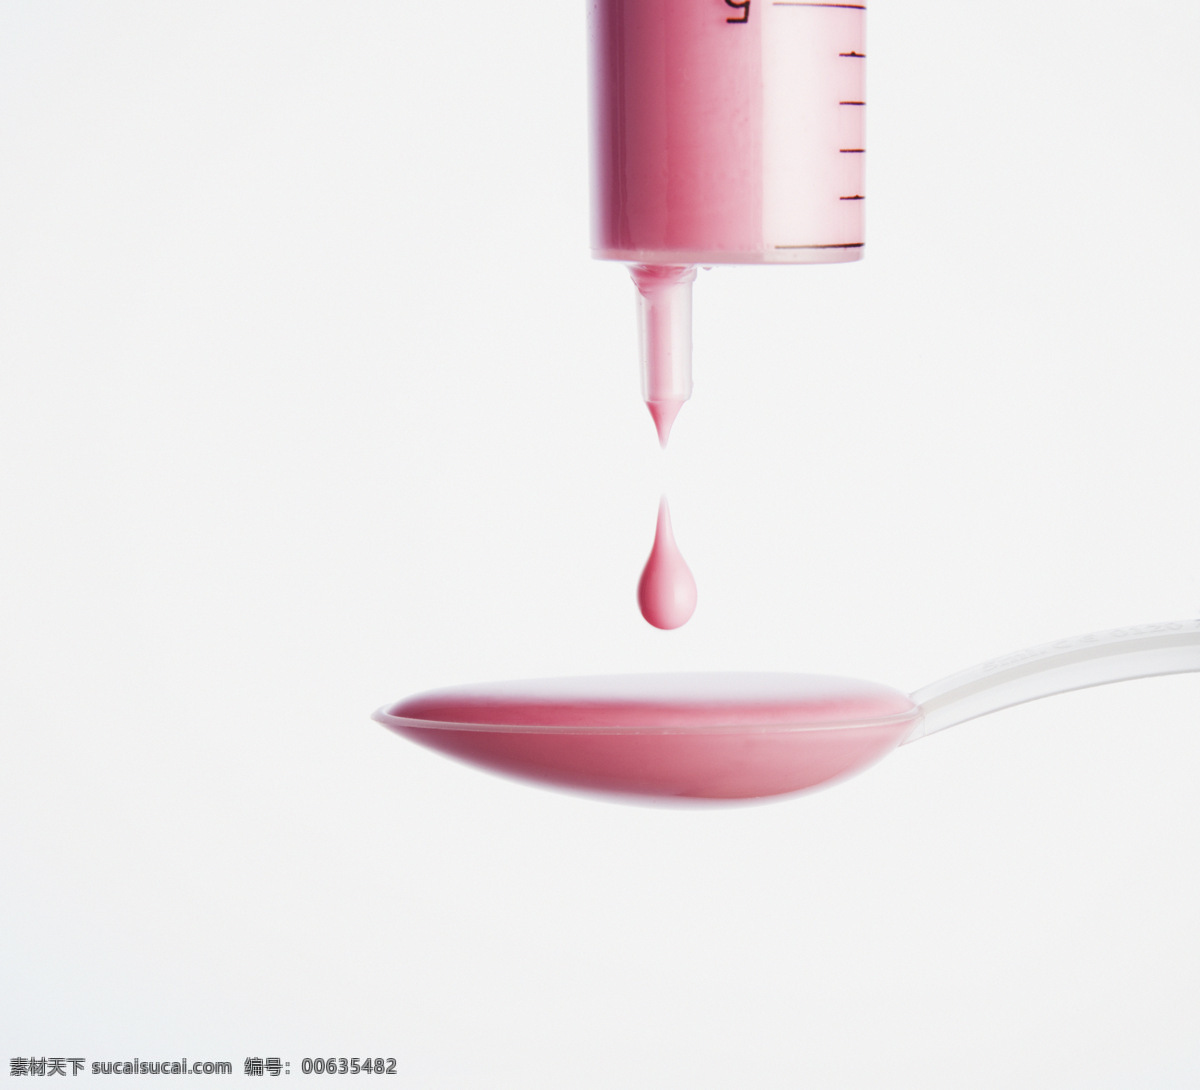 针管 滴 入 勺子 内 液体 粉色 试剂 医疗 健康 医疗护理 现代科技